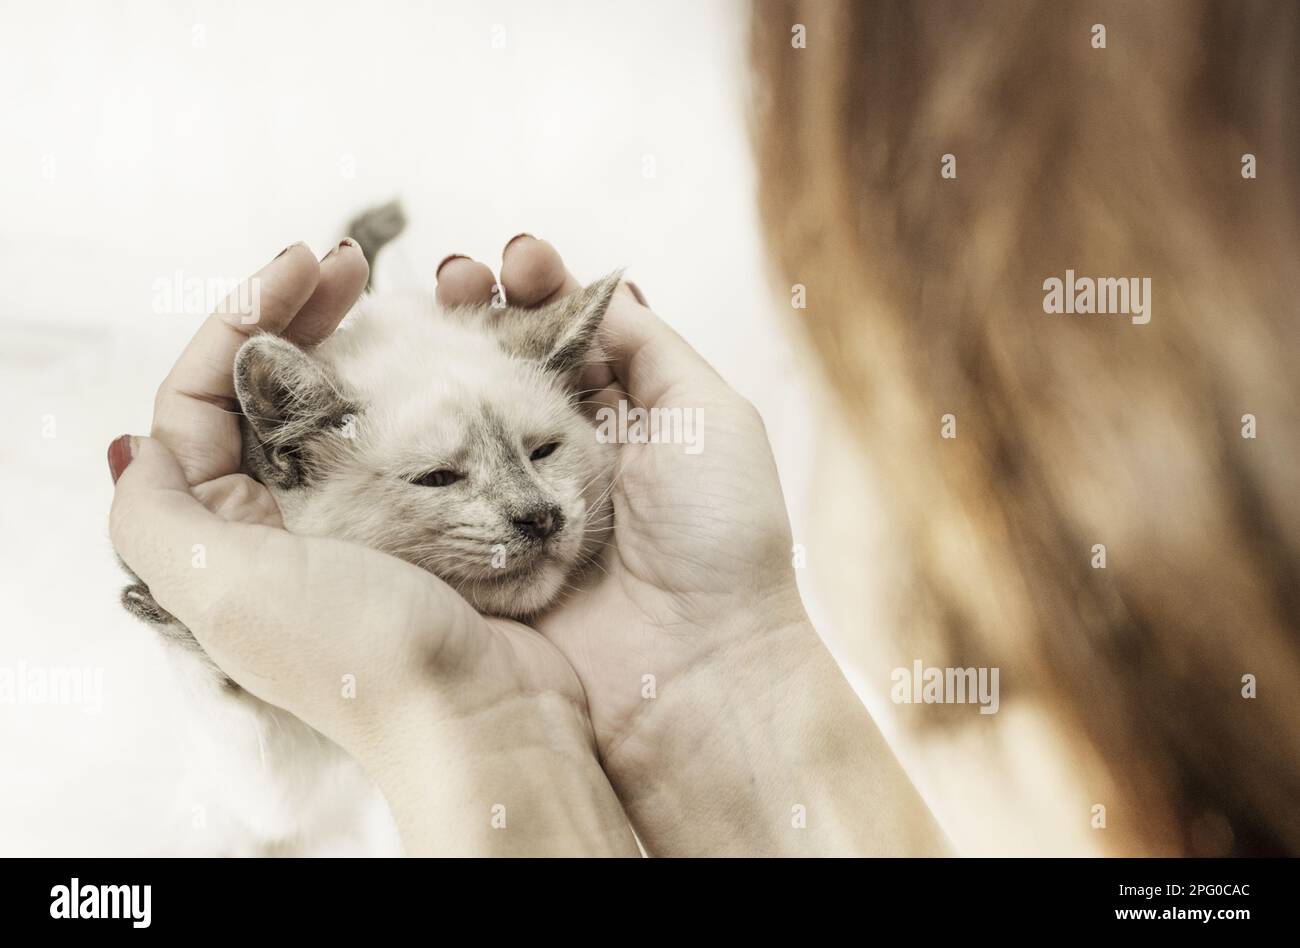 Das Kätzchen bekommt zu viele Umarmungen von einem Menschen Stockfoto